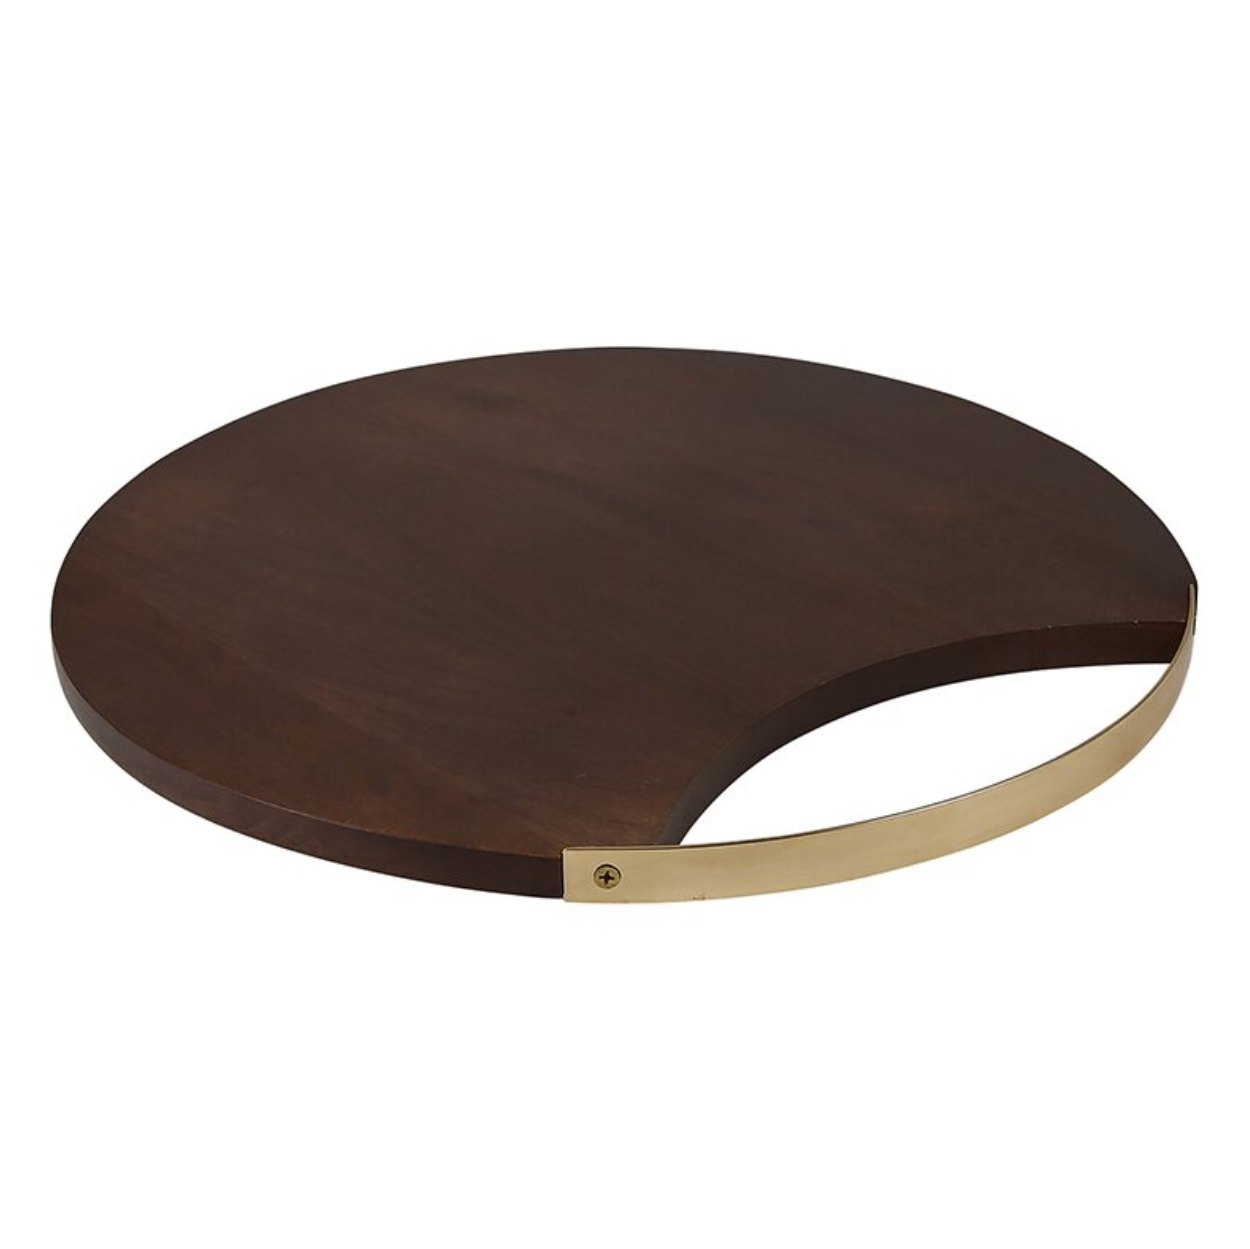 Wood + Brass Board - 16"